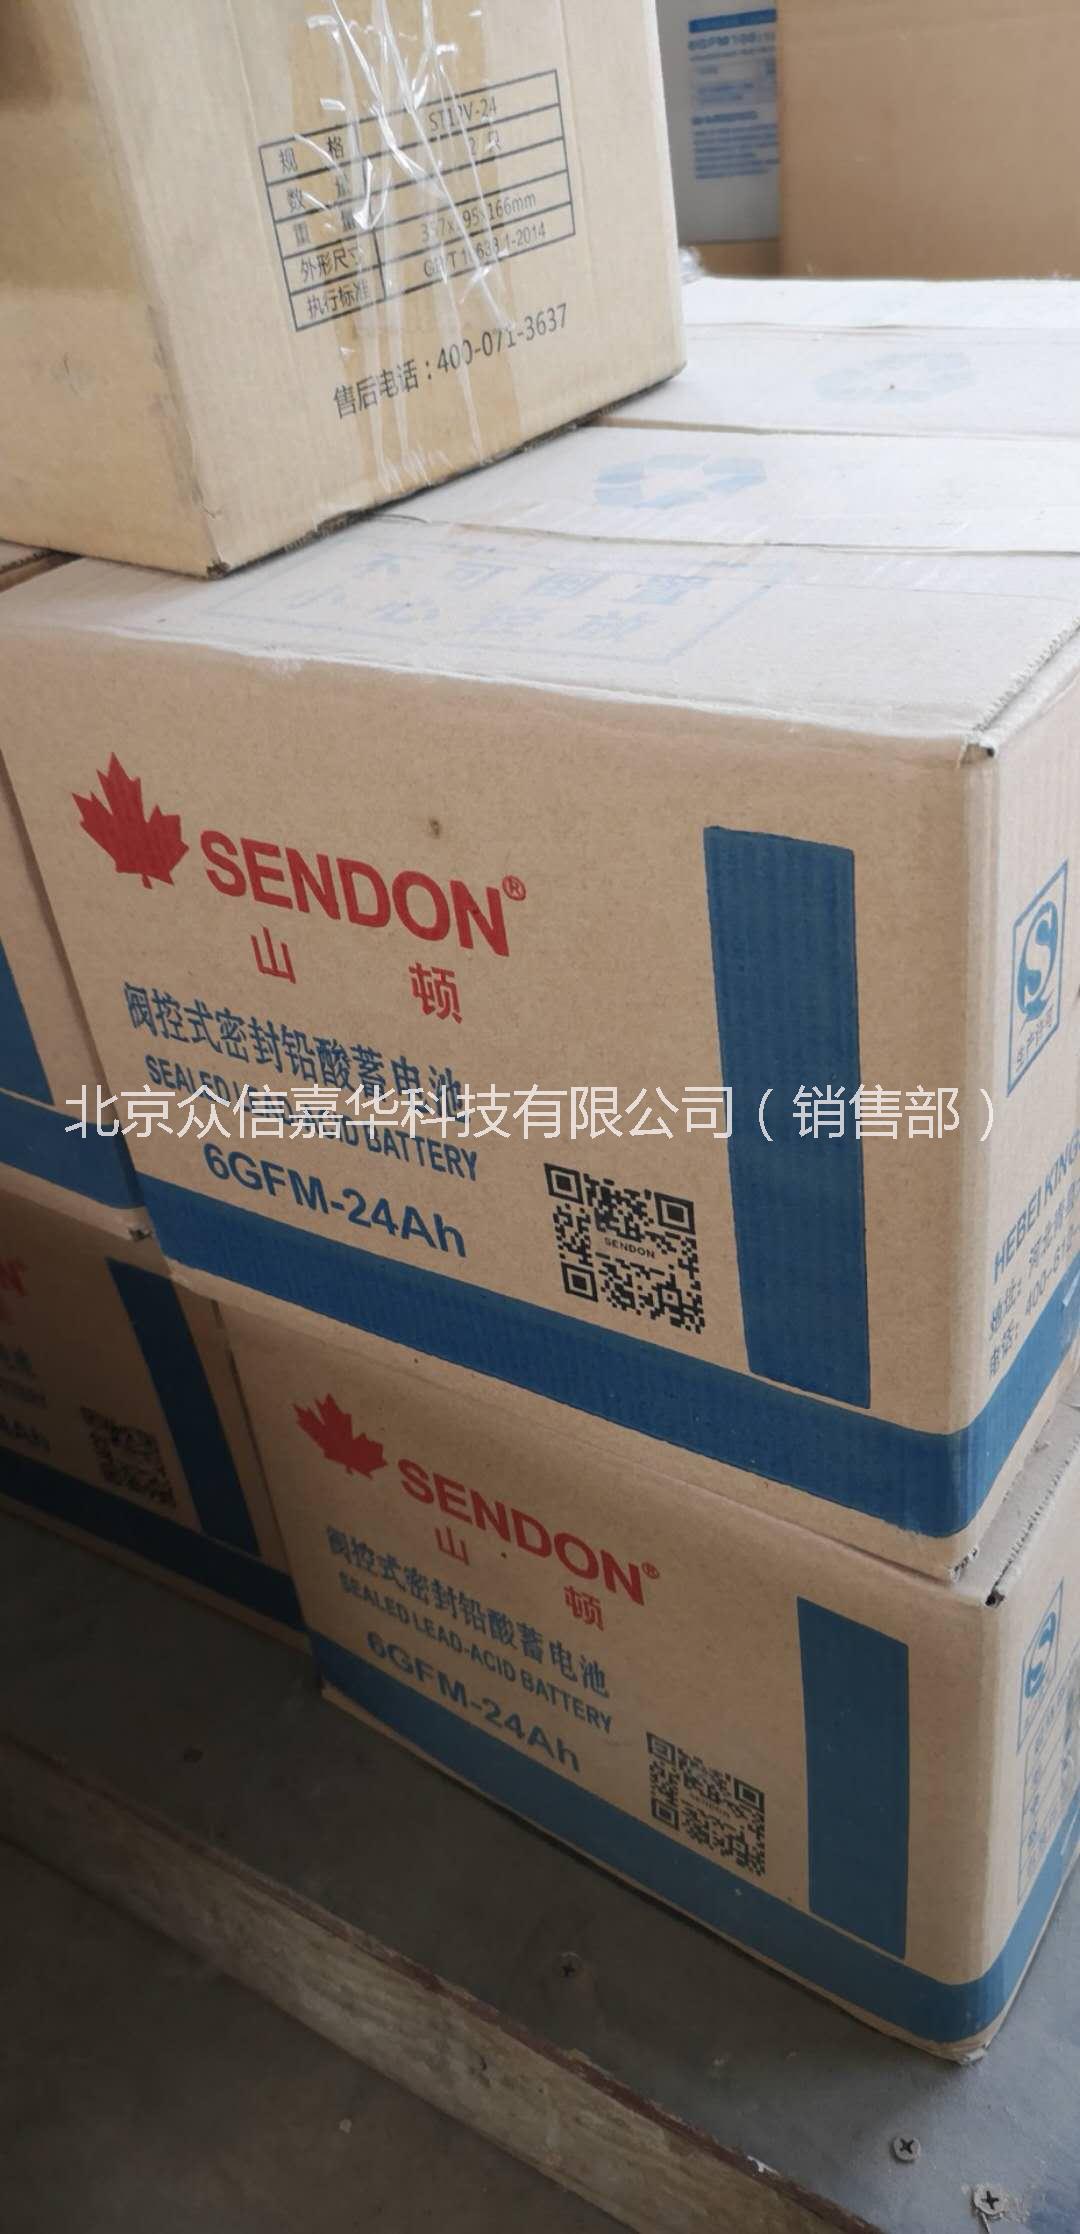 北京市山顿免维护铅酸蓄电池厂家山顿免维护铅酸蓄电池 蓄电池厂家批发 蓄电池价格